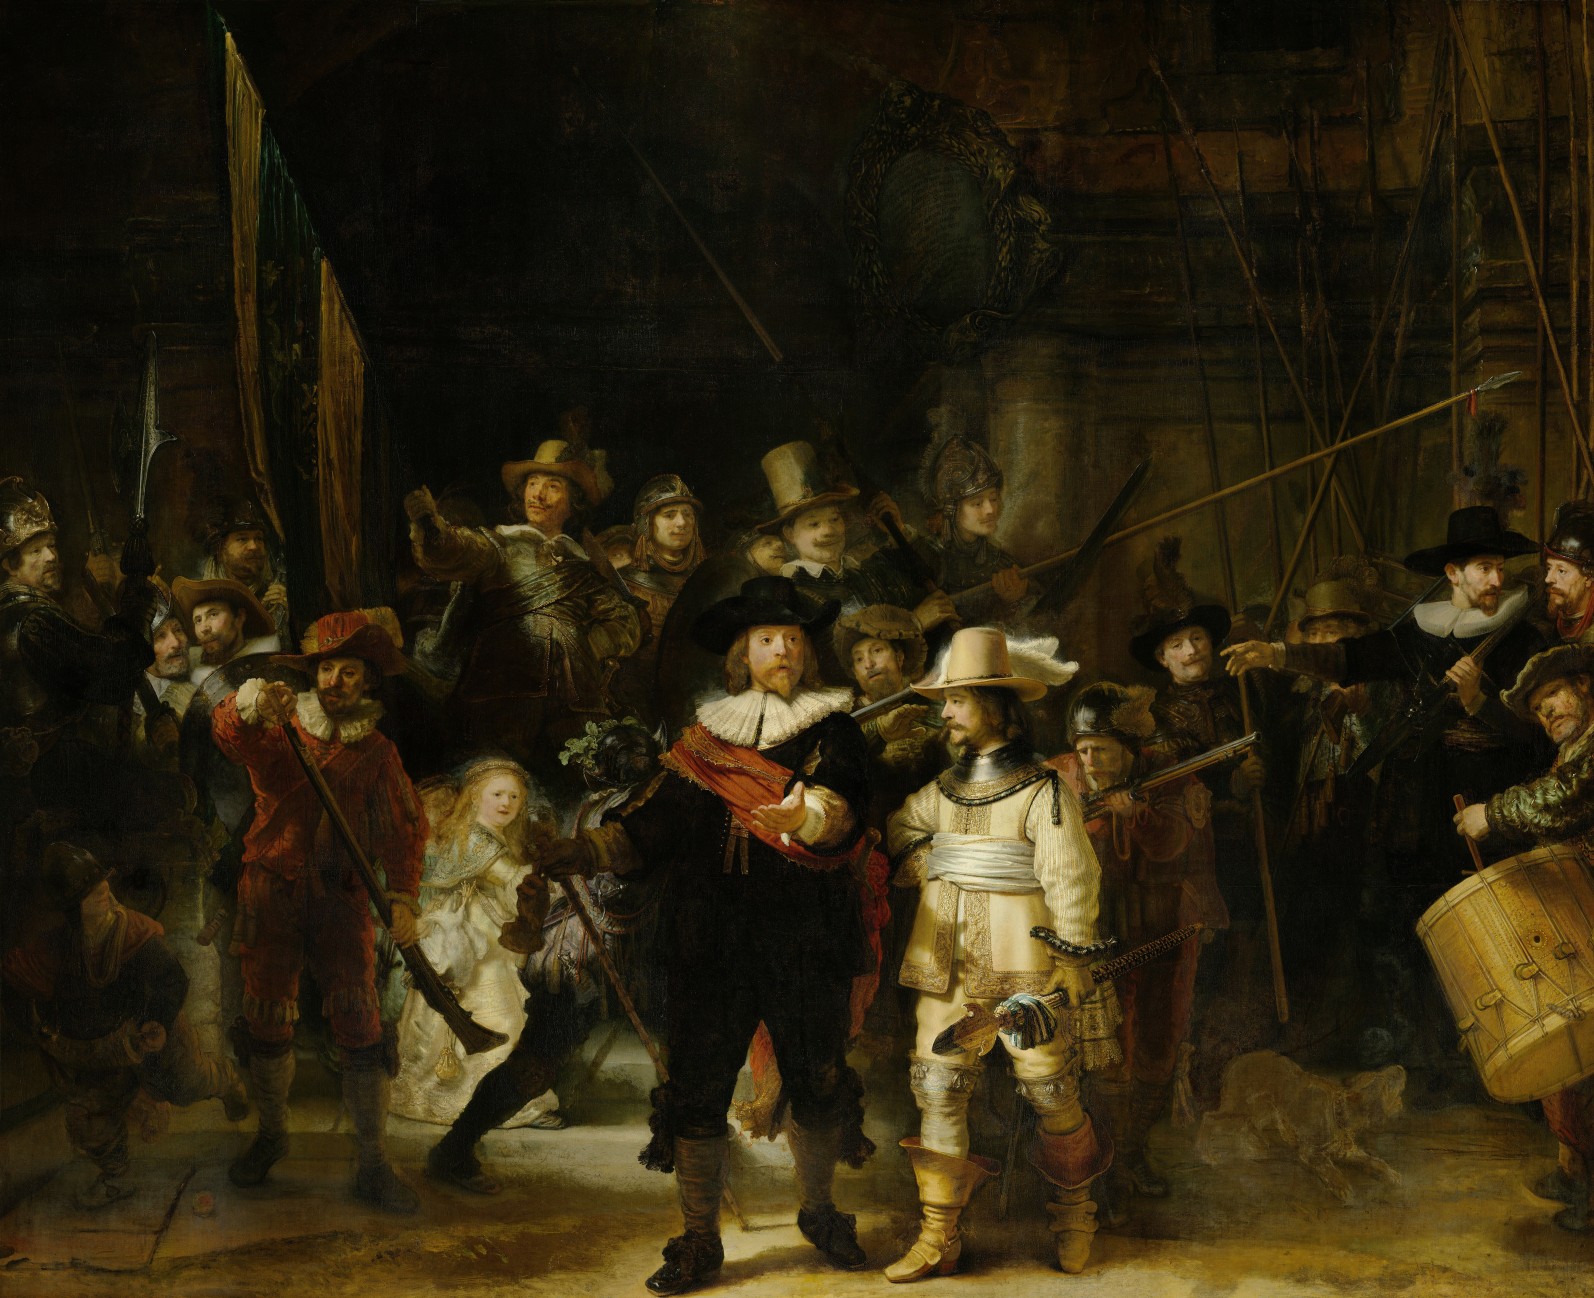 Rembrandt van Rijn, The Night Watch, 1642